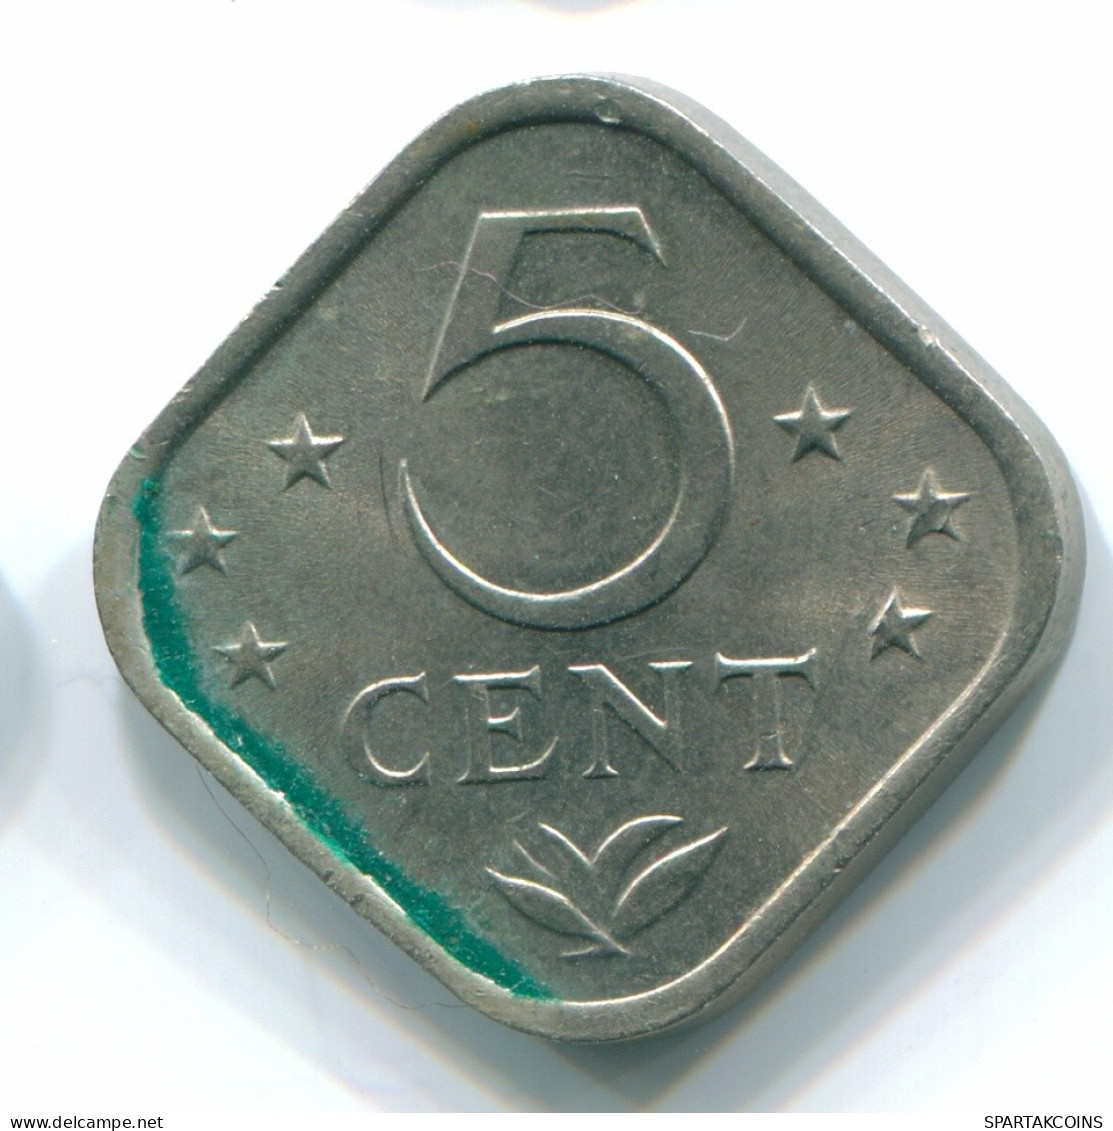 5 CENTS 1971 NIEDERLÄNDISCHE ANTILLEN Nickel Koloniale Münze #S12199.D.A - Antilles Néerlandaises